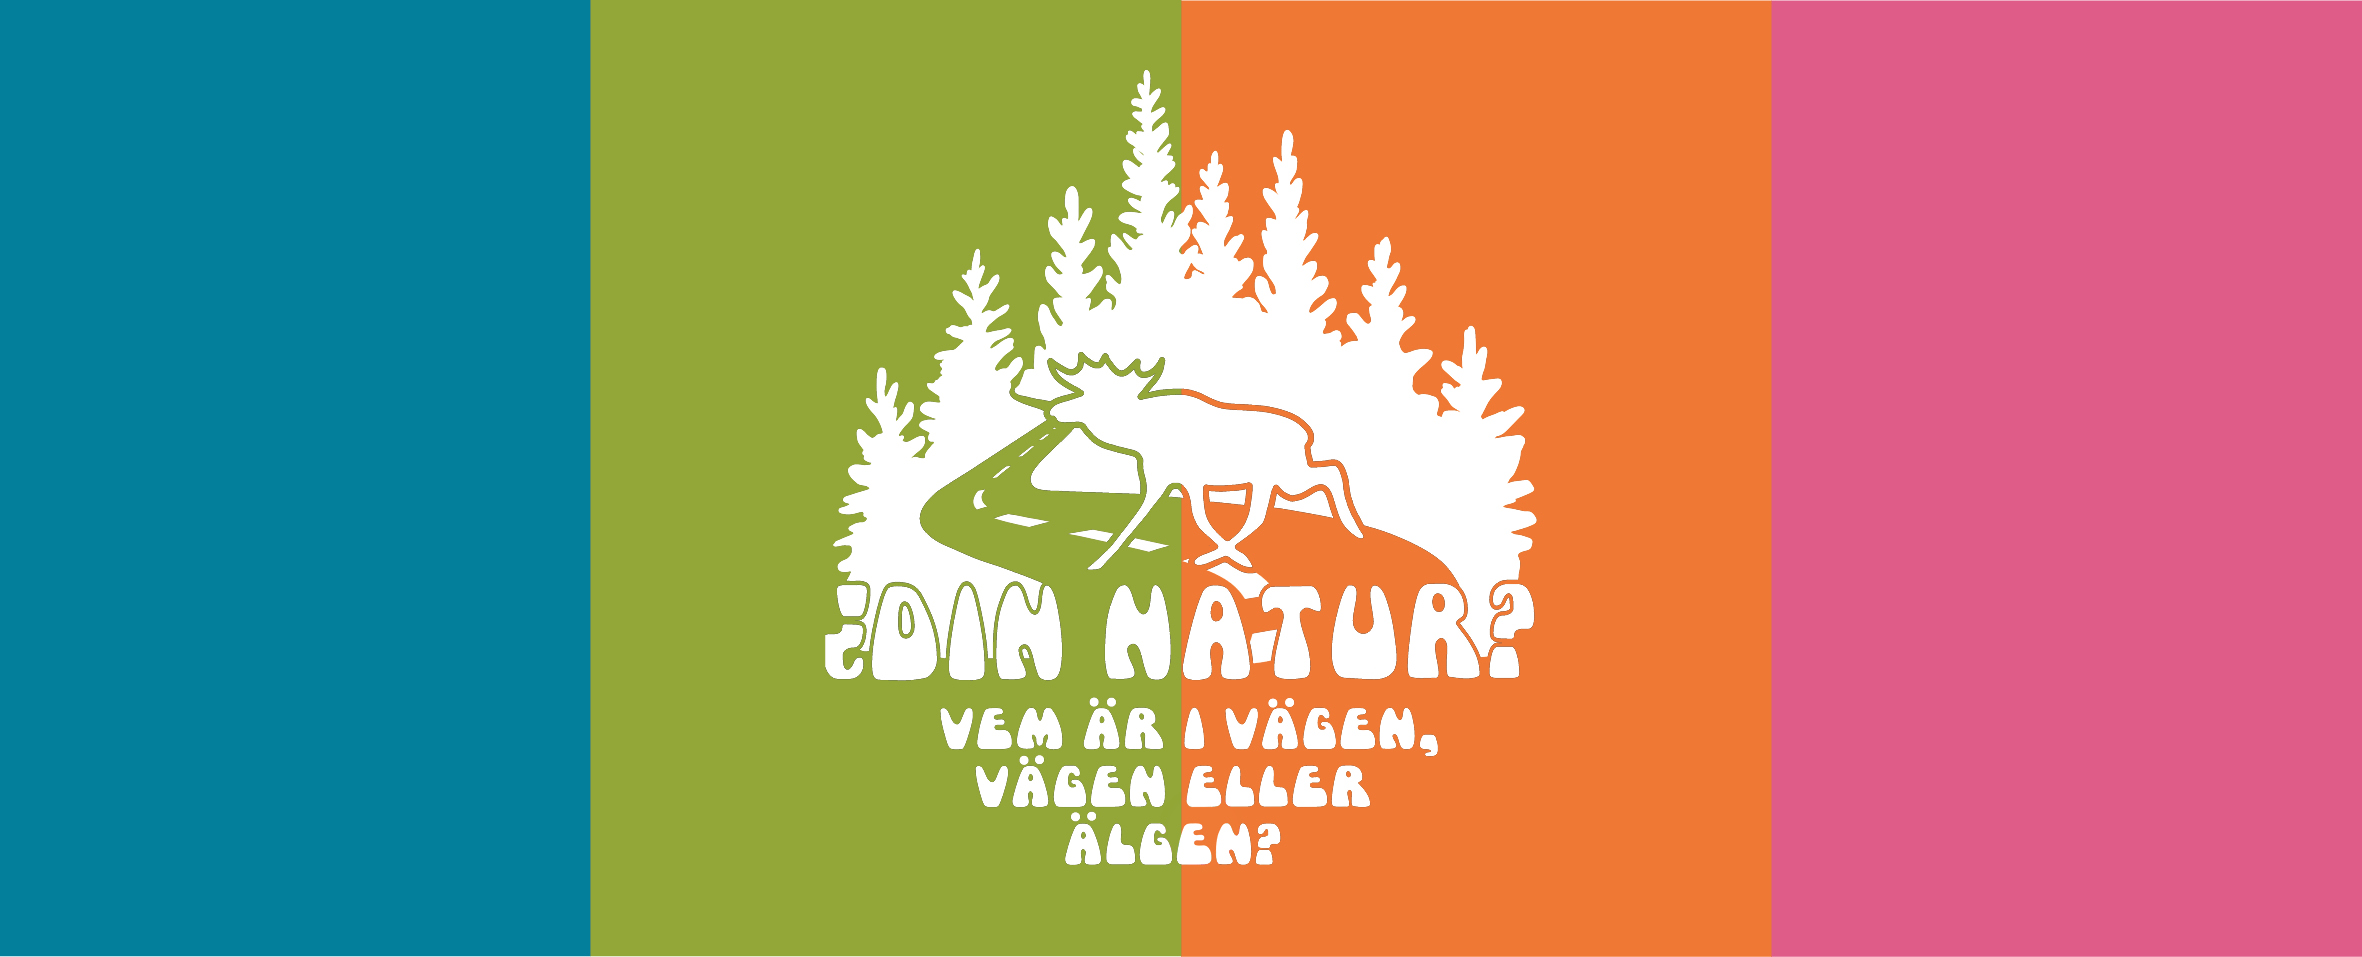 Logtype för naturums tema Din Natur? med bakgrund i blått, grönt, orange och rosa